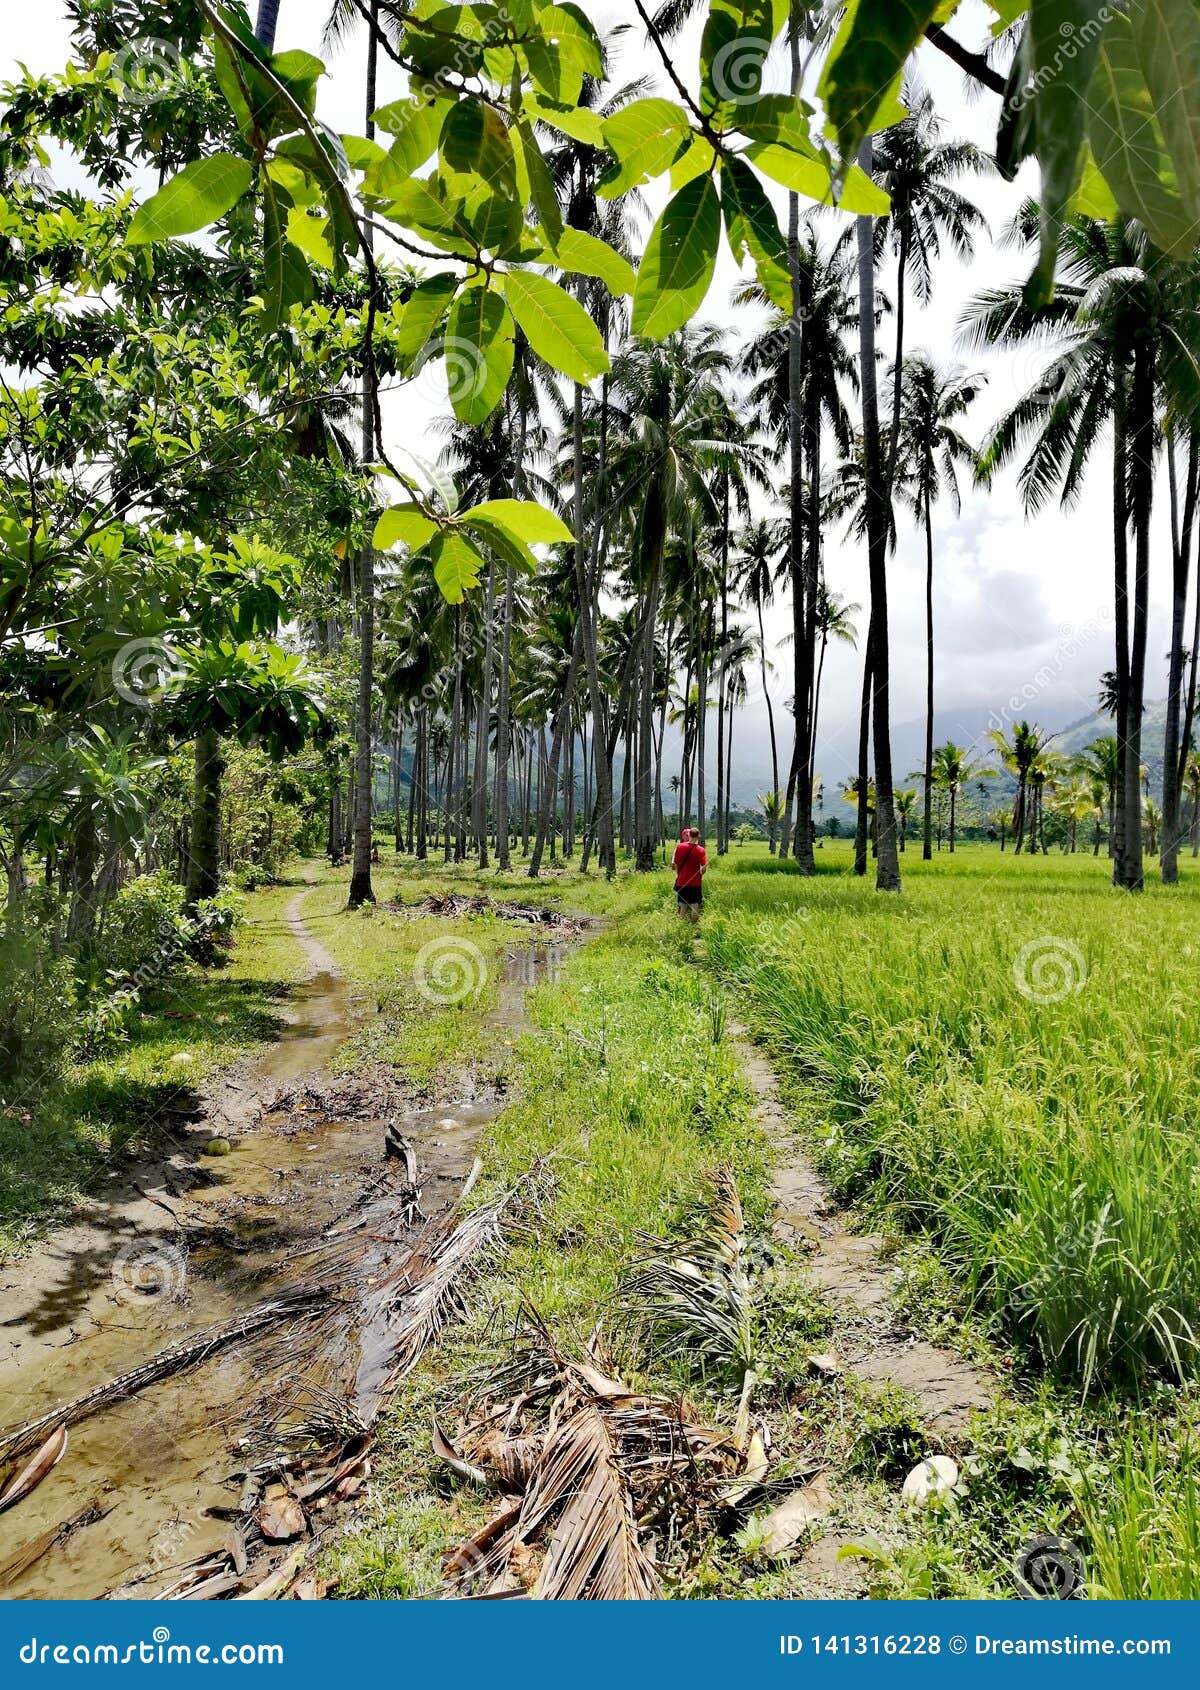 Promenad till och med risfält och kokosnötkoloni på Mindoro, Filippinerna; Tropiska loppdestinationer, turist- dragningar, ecoturism; riskokosnöt som farming/odling i kullar av Mindoro; jordbruk; lantlig tropisk landskapscenery/miljö/omgivning; gå horiskolonier